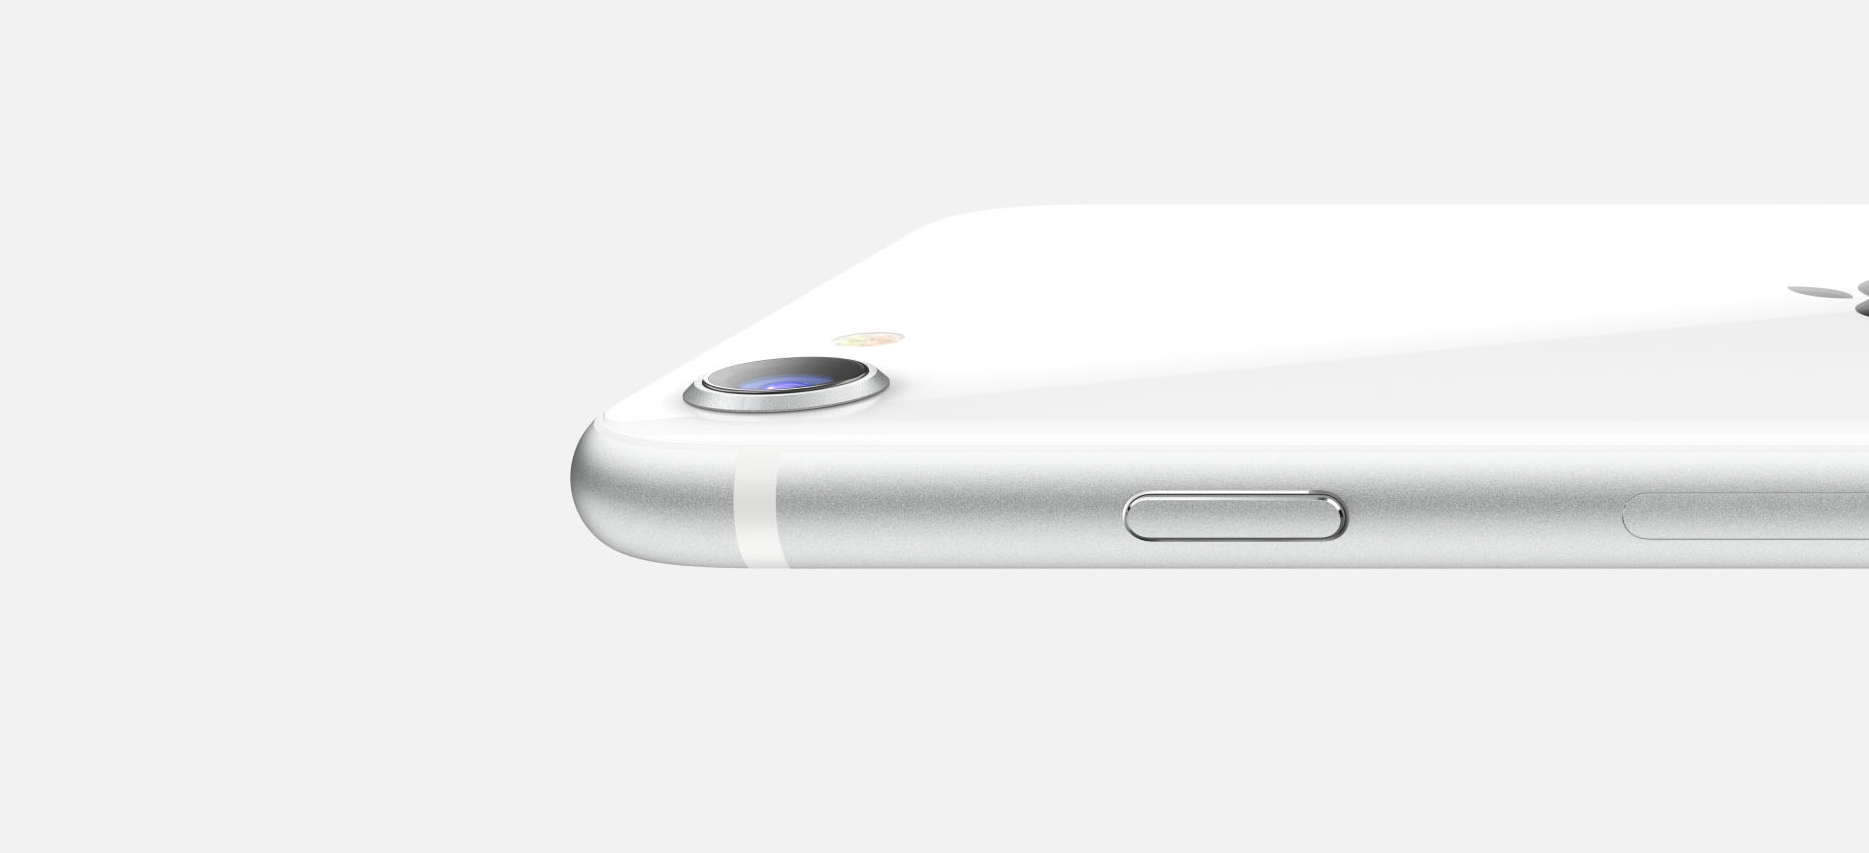 iPhone SE 3: Apple ha in programma di lanciarlo nel Q1 2022